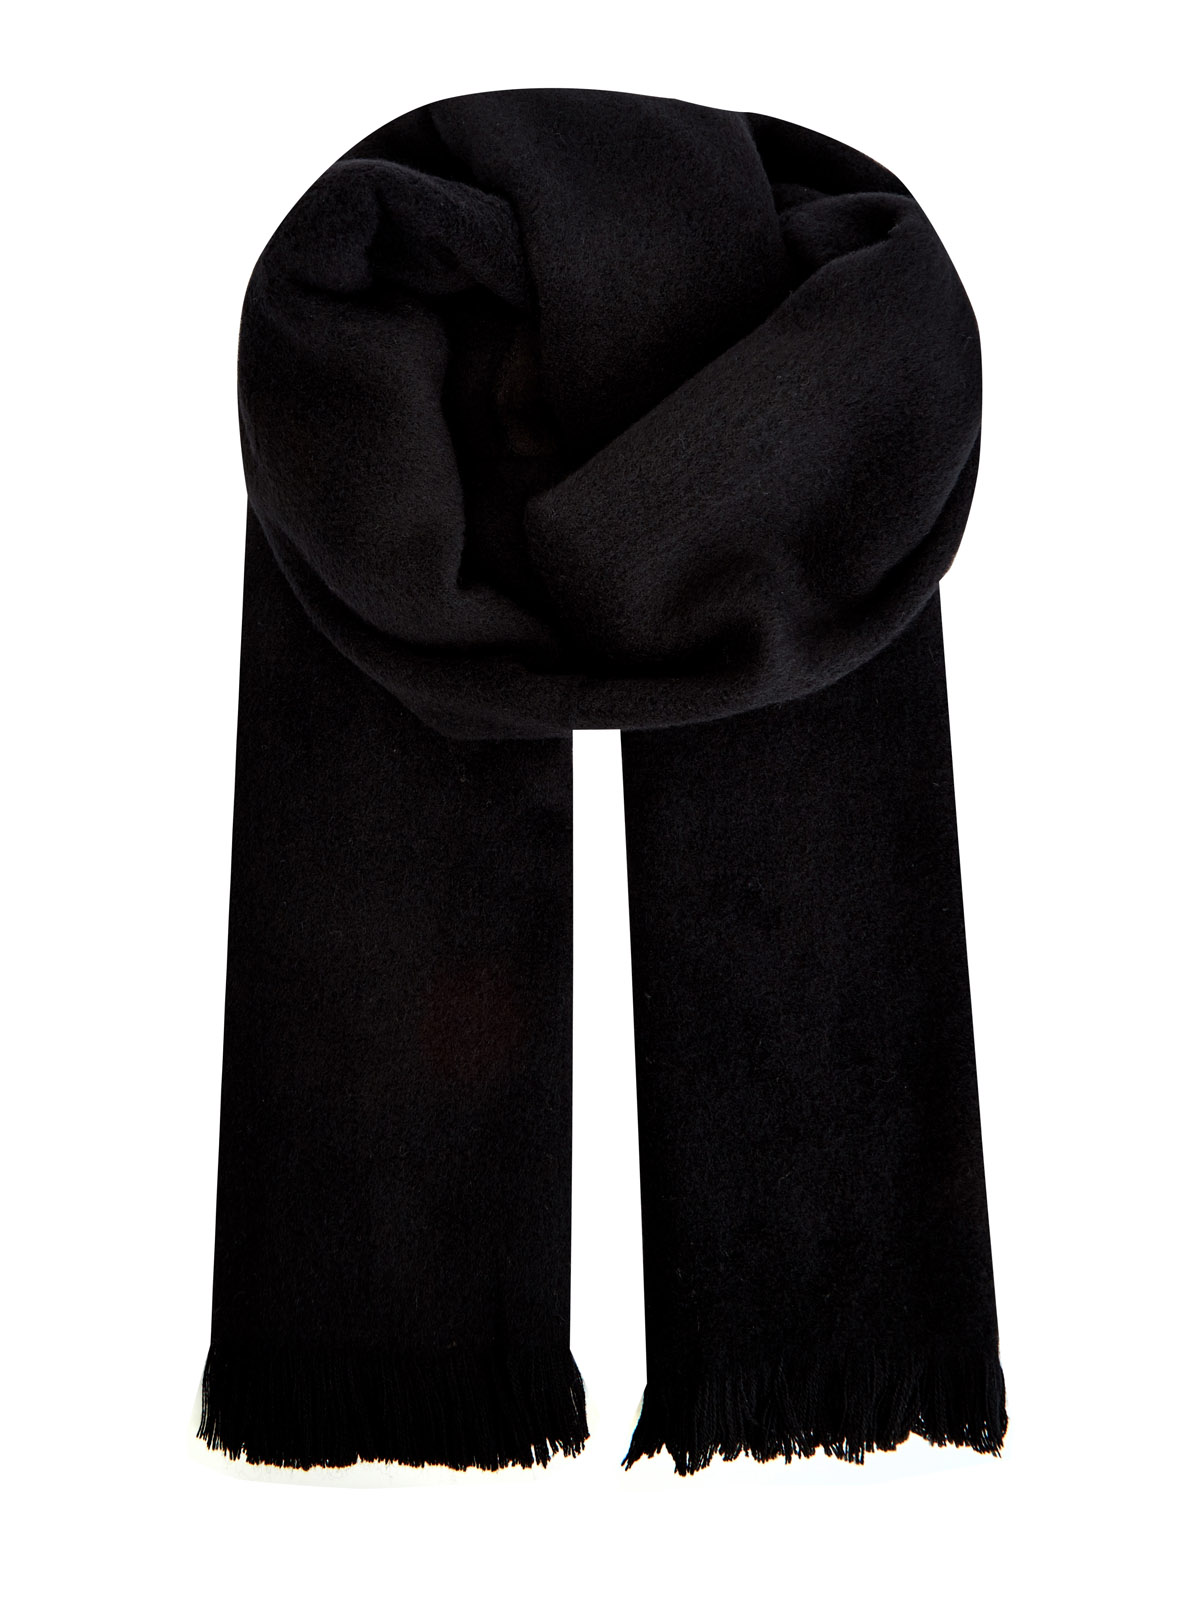 Палантин из мягкой фактурной шерсти с бахромой GENTRYPORTOFINO, цвет черный, размер 40;41;42;43;44